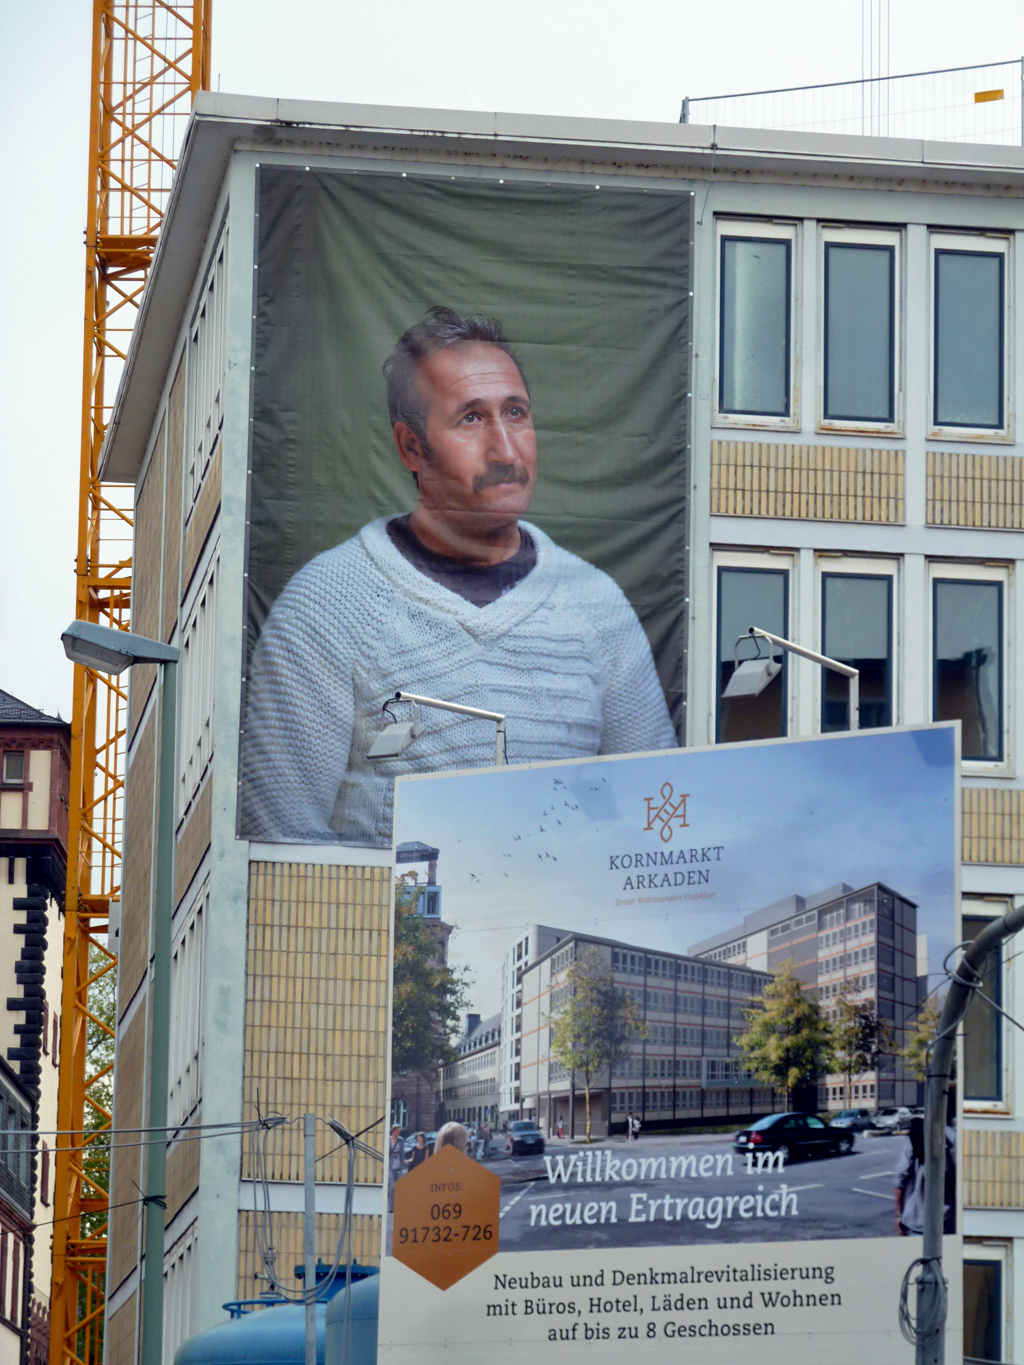 New Citizens - Kunst mit großen Porträts von Flüchtlingen in Frankfurt